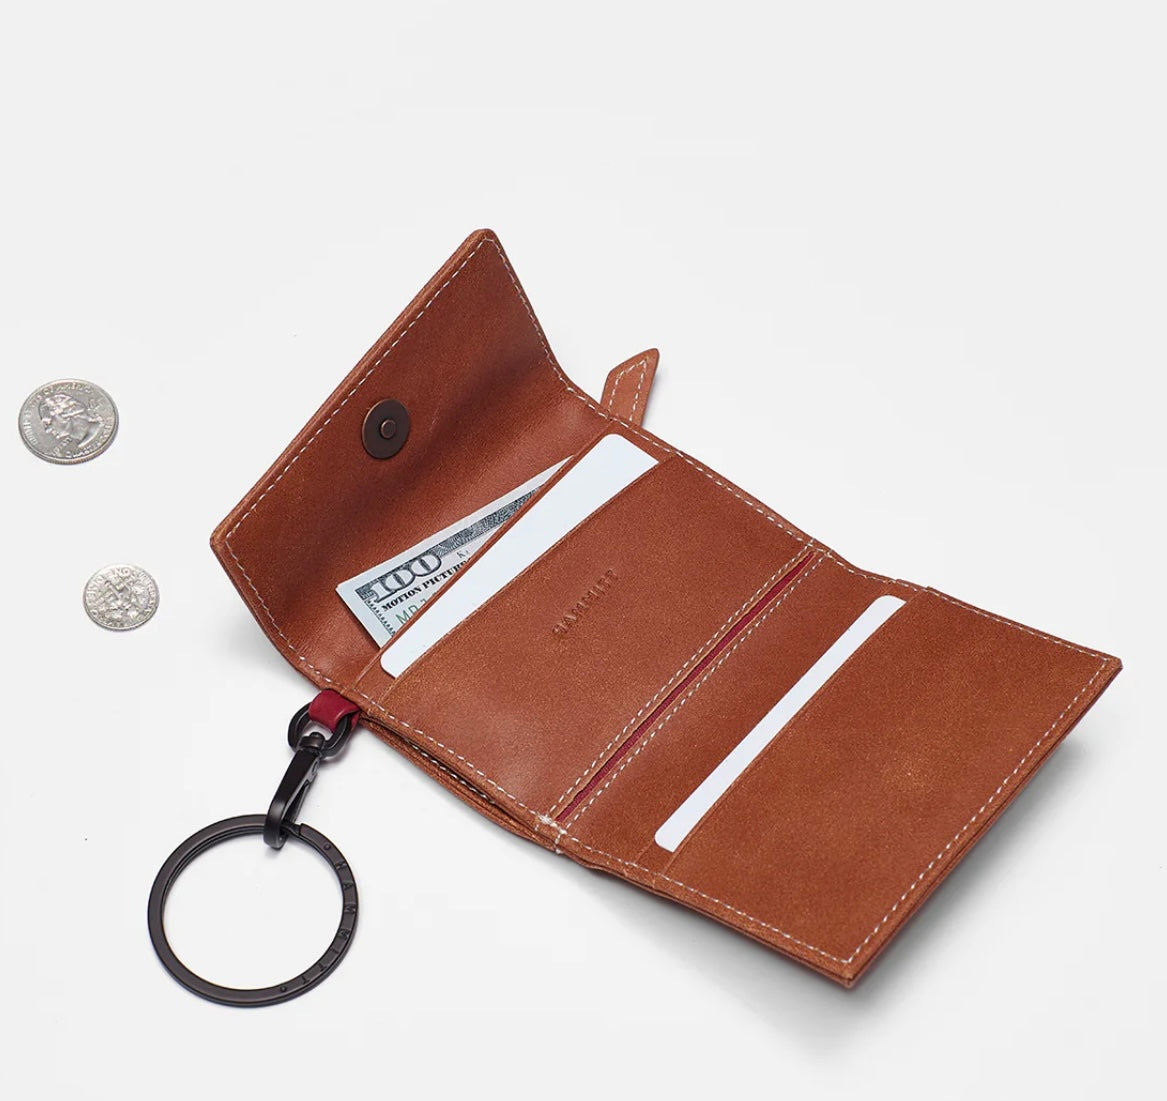 Hammitt Royce Key Wallet in Saddle Brown